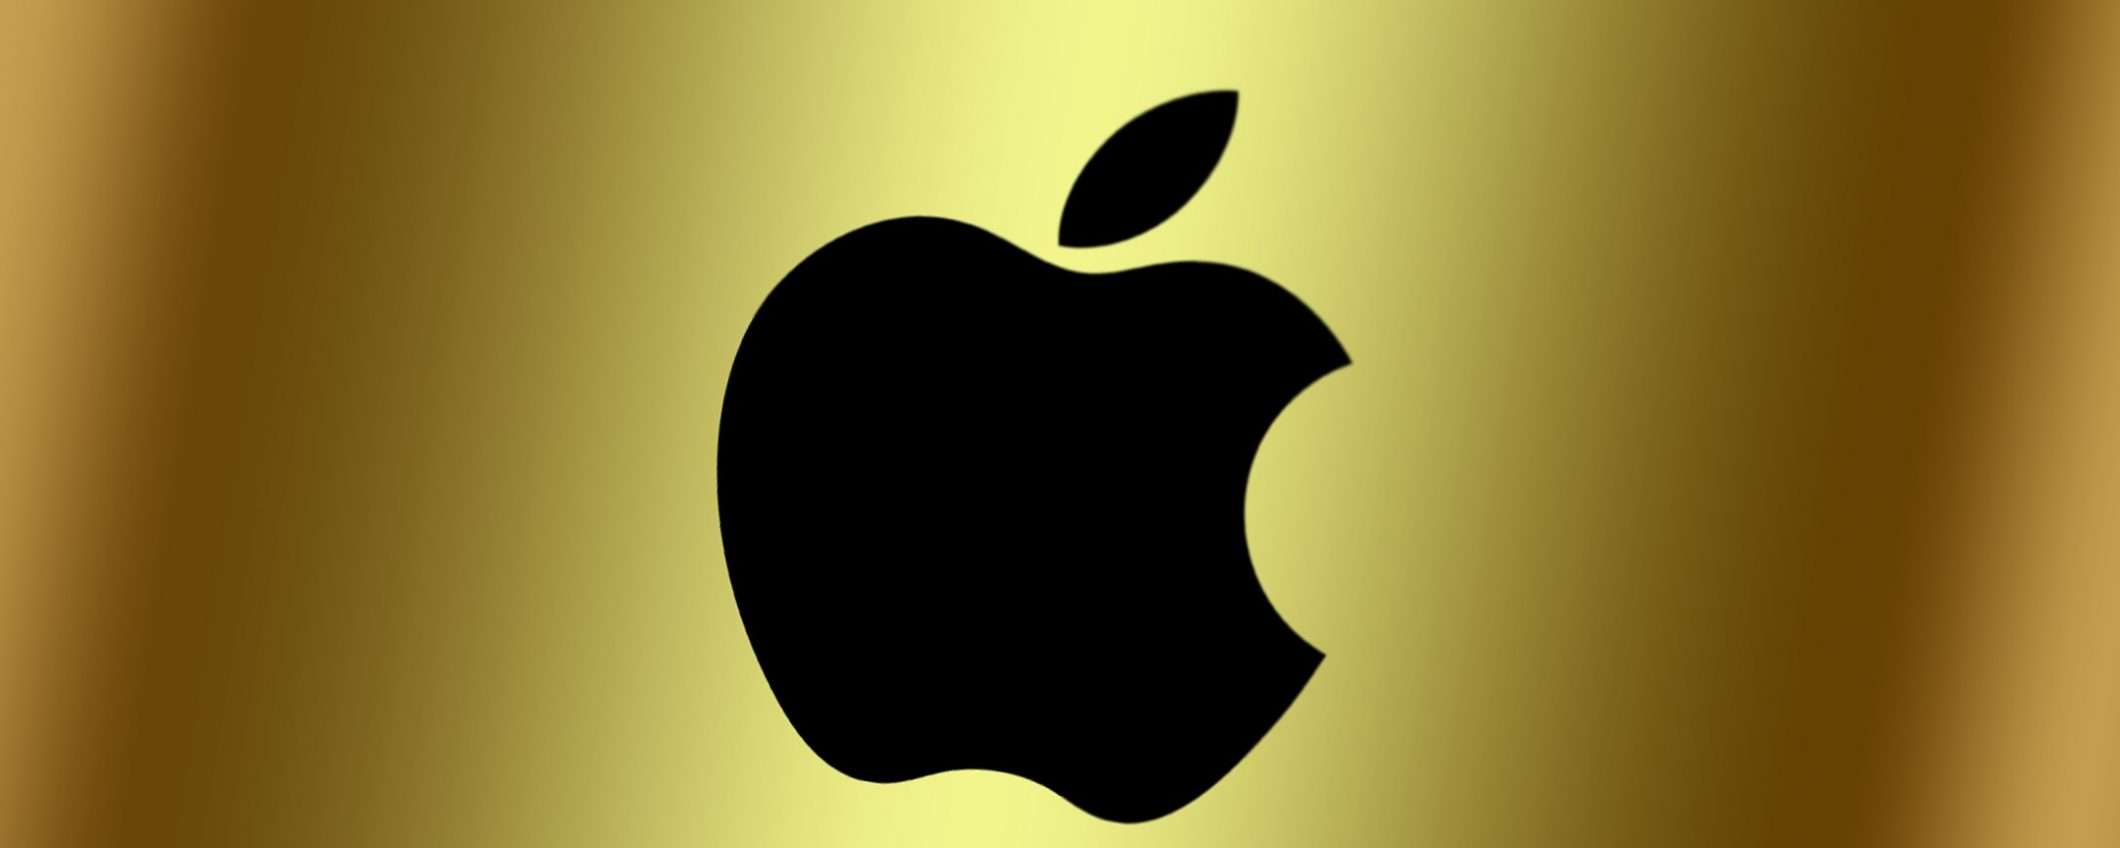 Apple cresce ancora: iPhone X è stato un successo